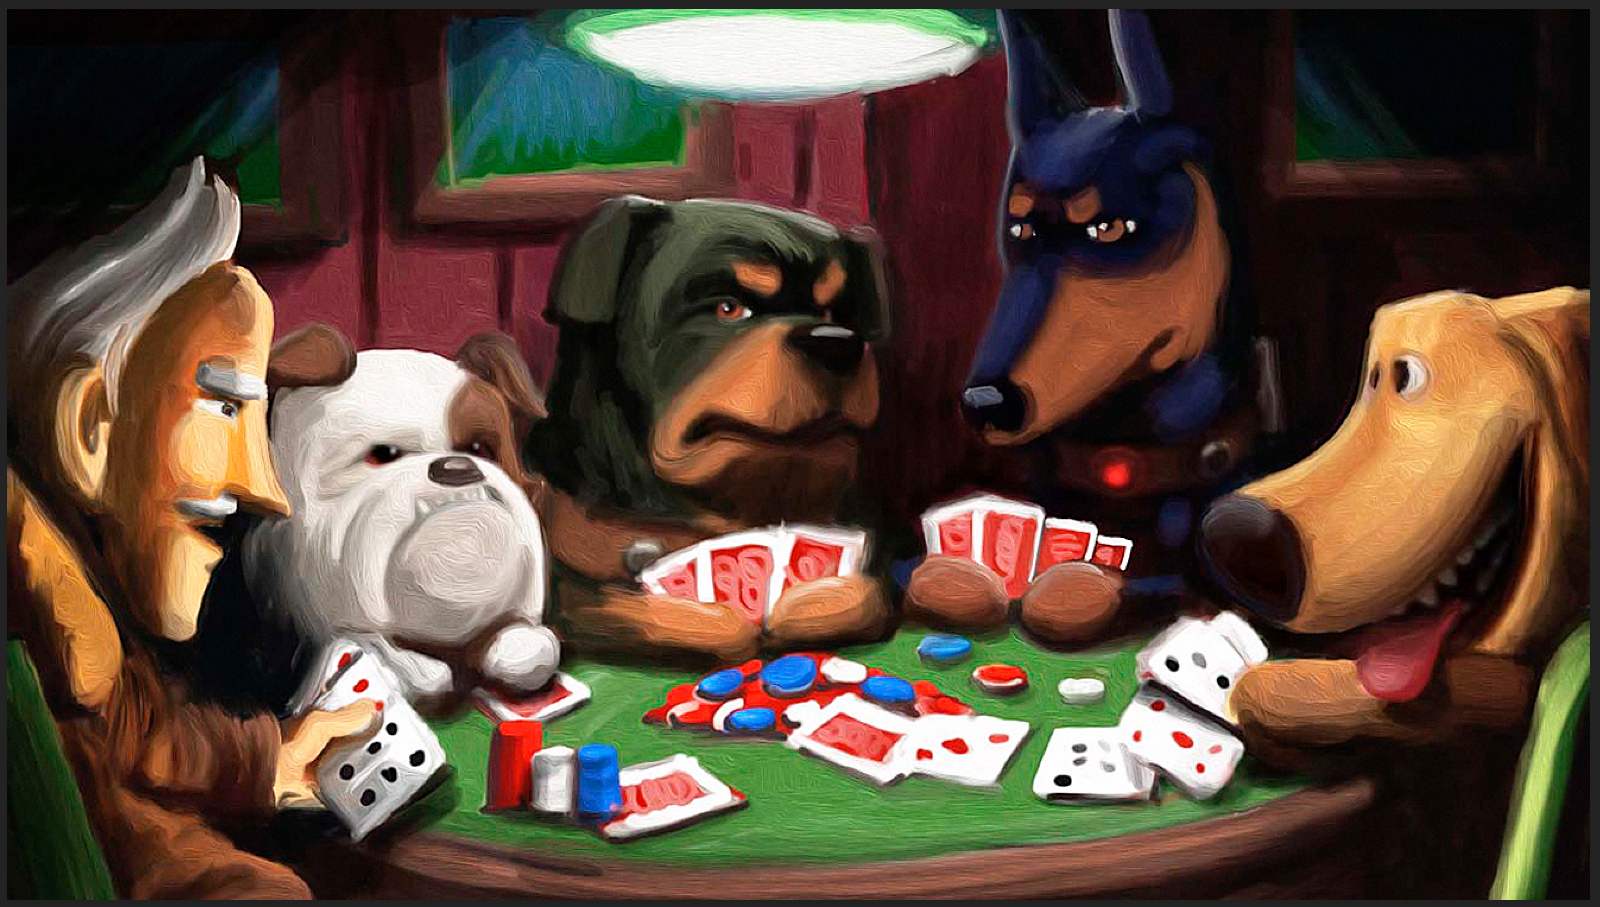 Disney Pixar Artland Hold Em Up Le100 Pin Up Dogs Playing Poker Dug Alpha Beta 129 99 Picclick